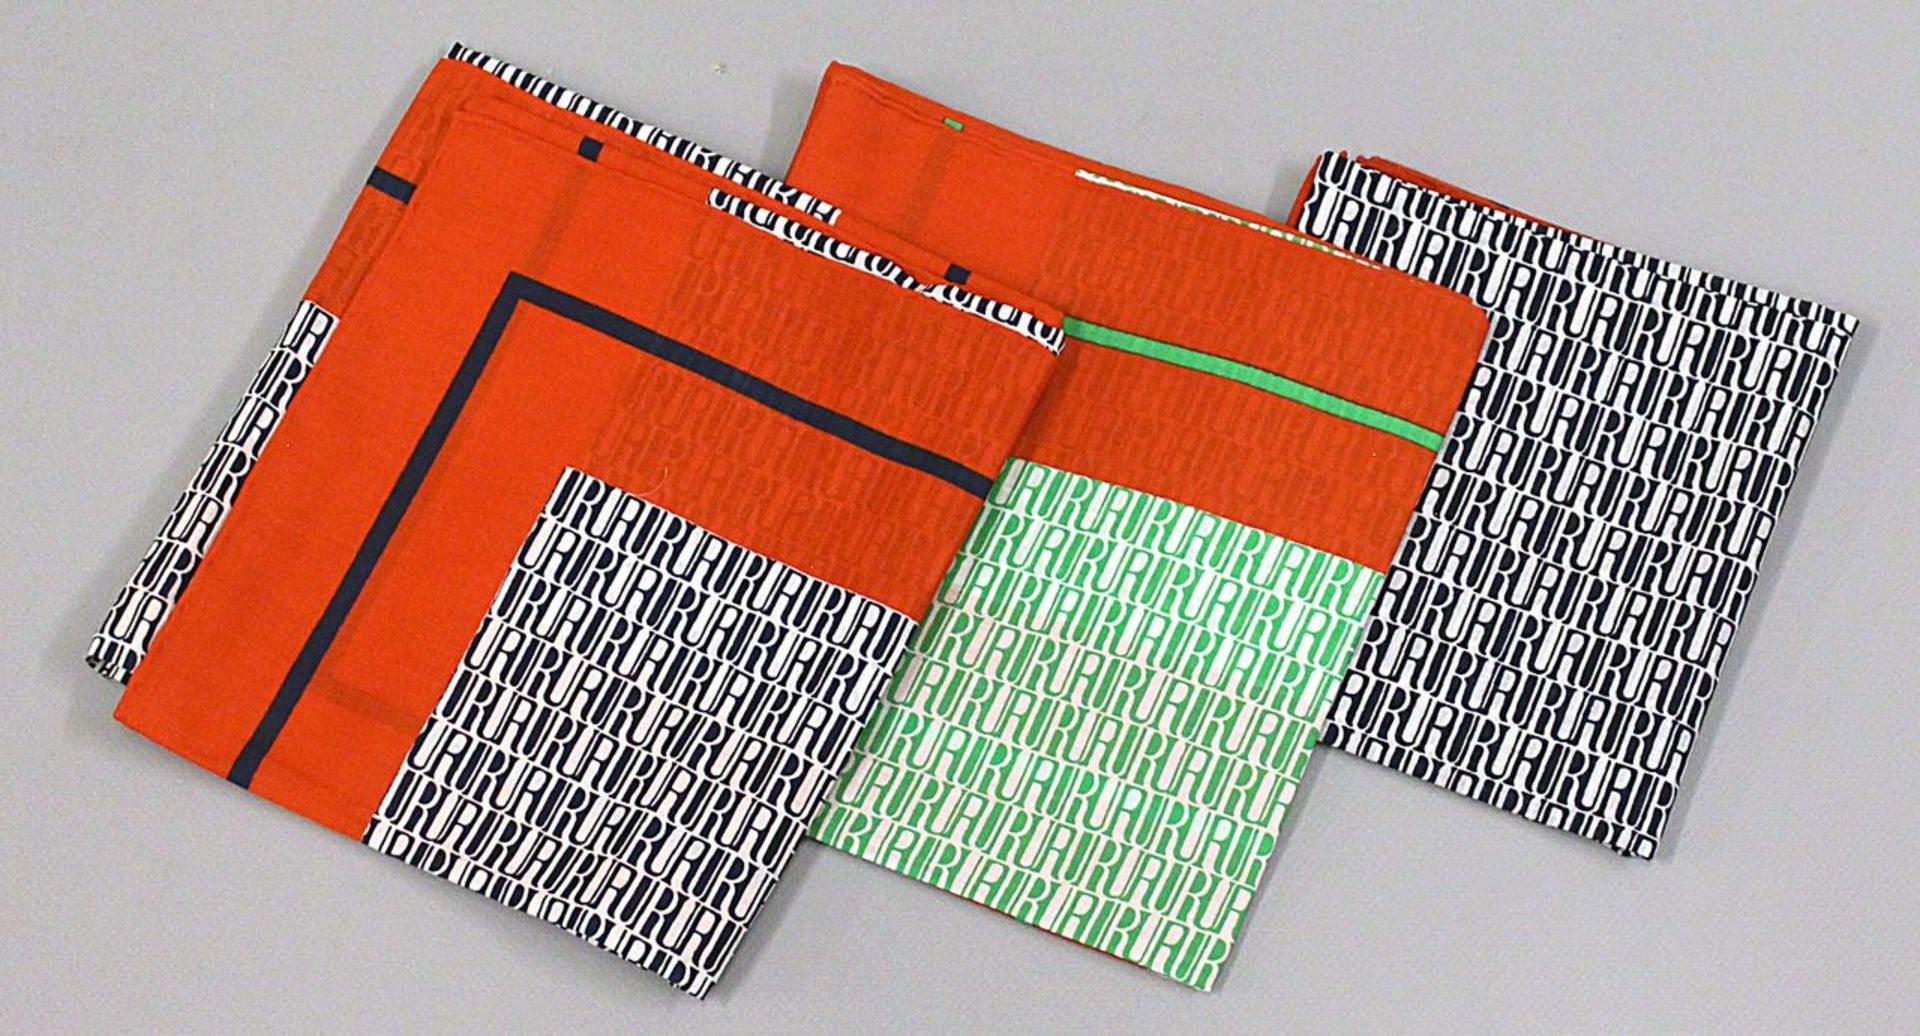 Drei Tücher, Uli Richter. Baumwolle, "UR"-Monog. Tricolor in div. Farben. D. 66x 62 cm.